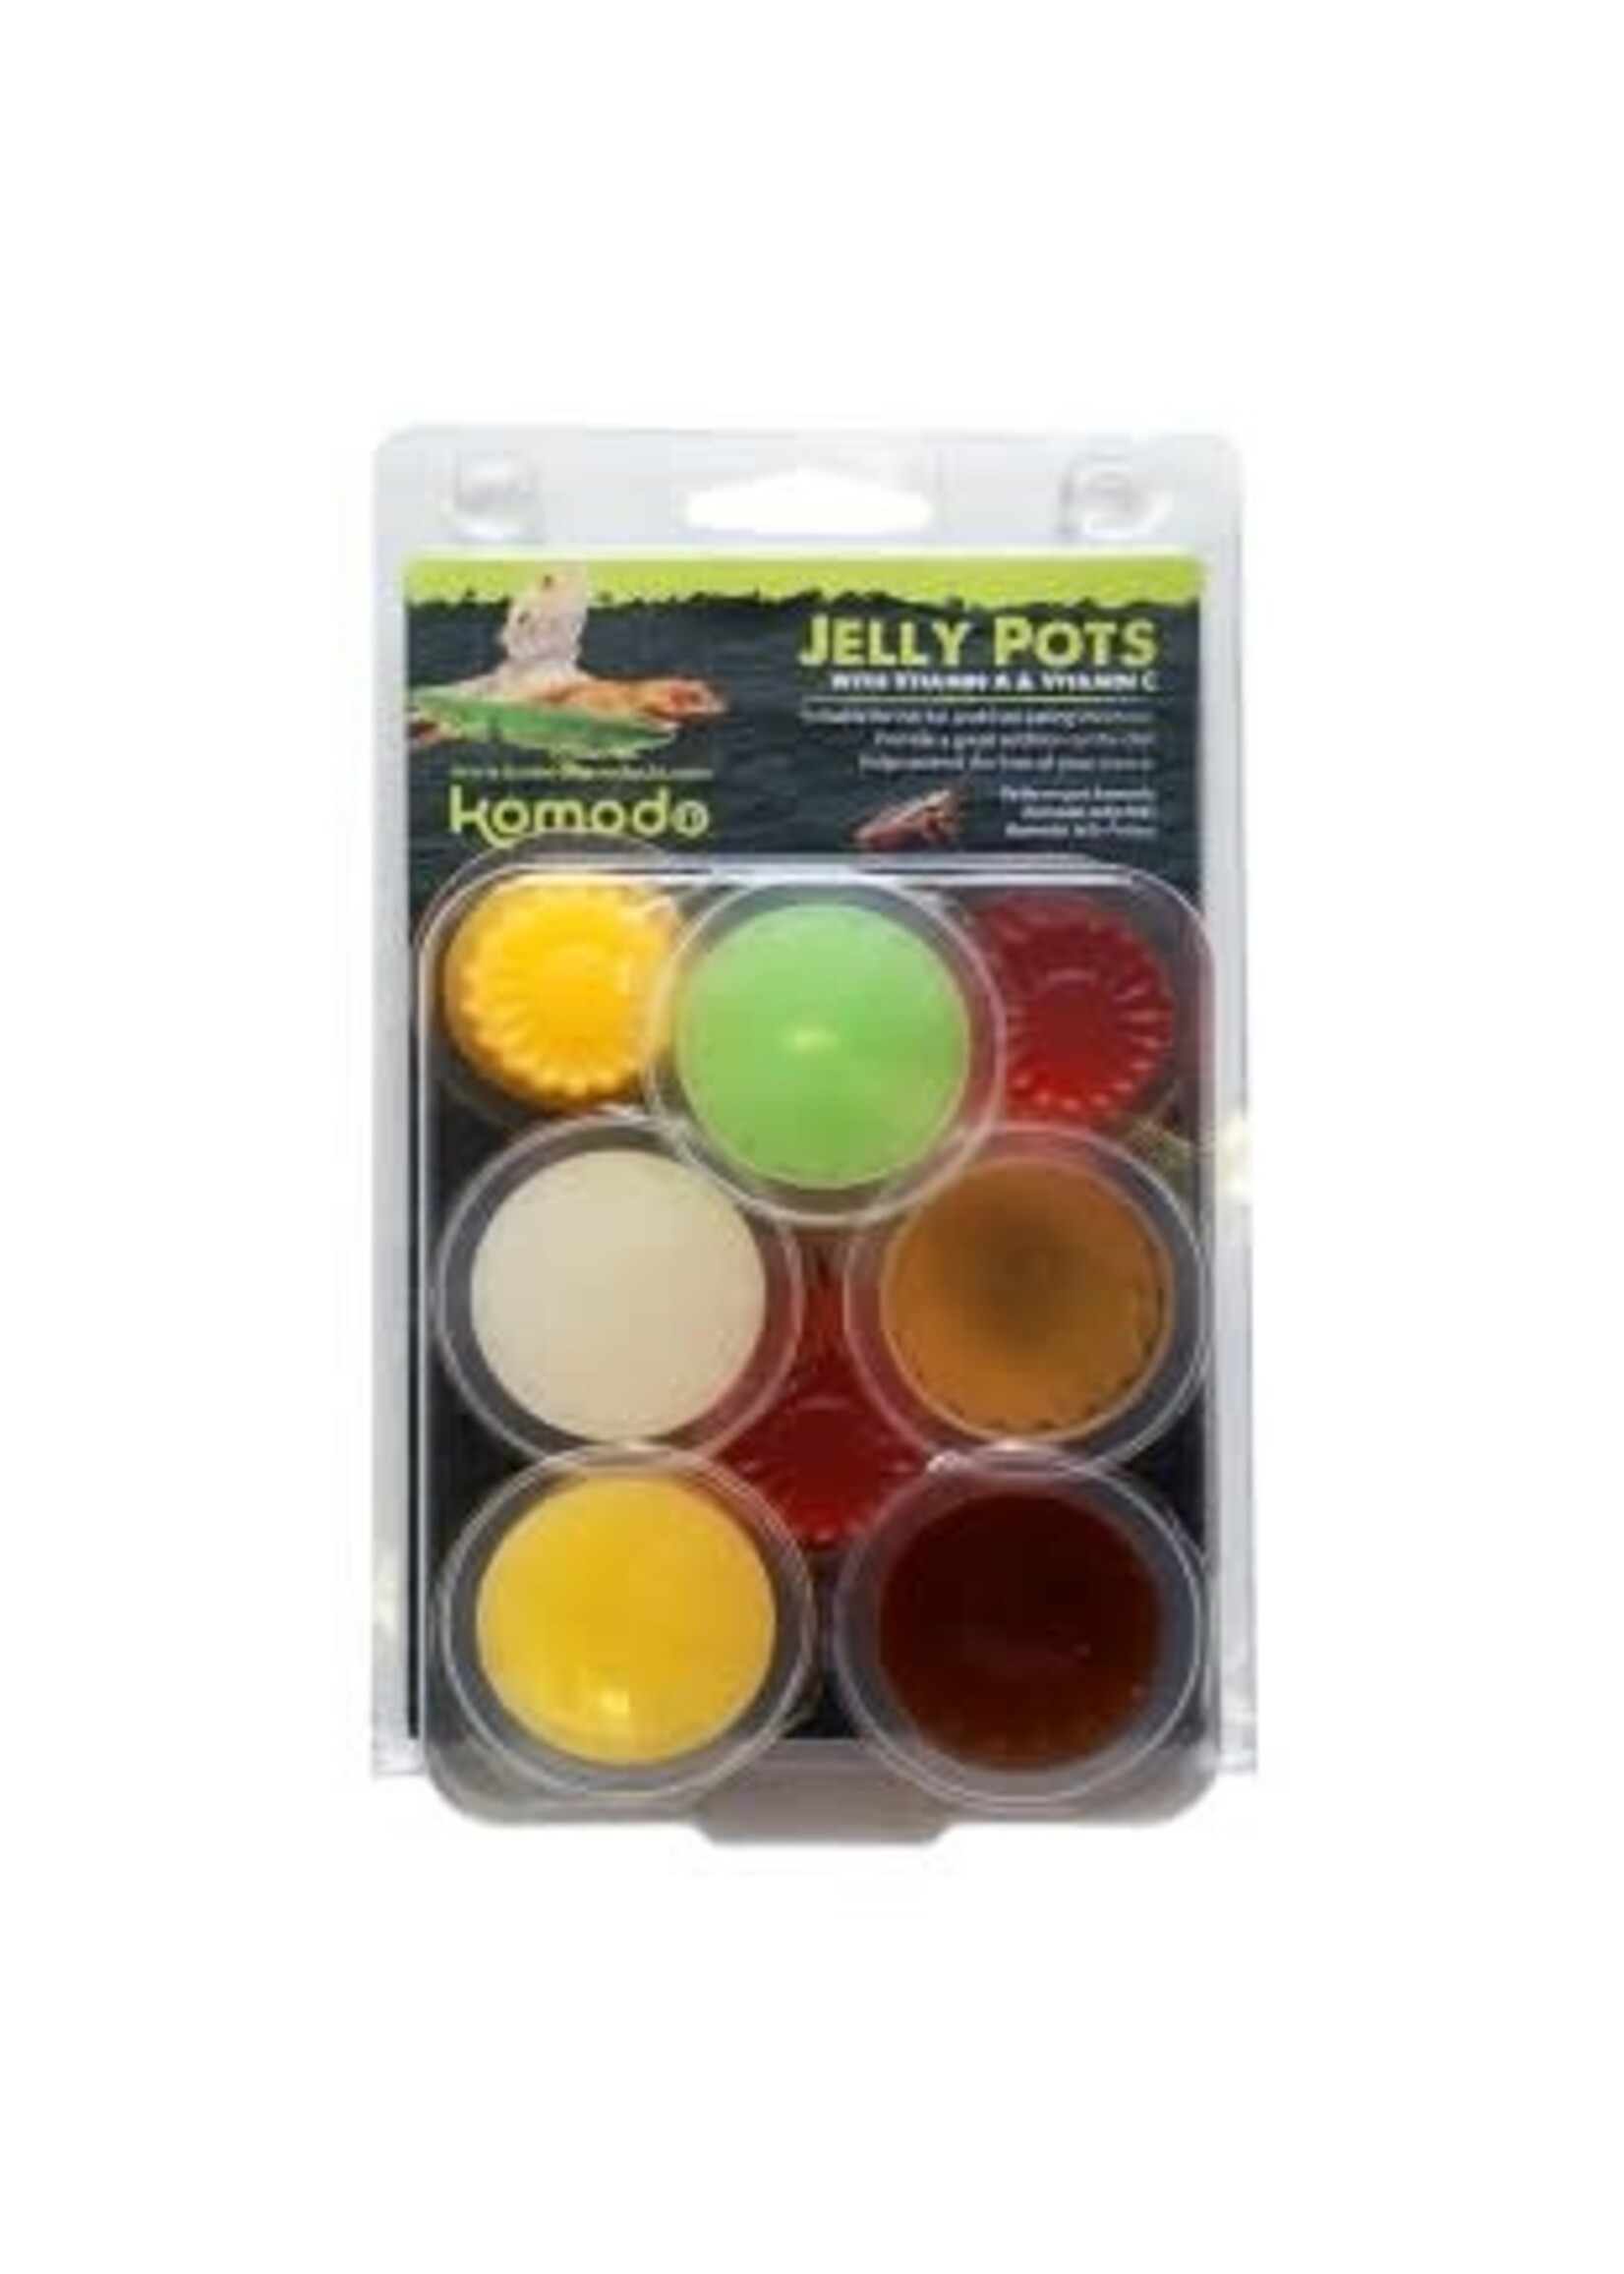 Komodo Komodo Jelly Pots 8 pack